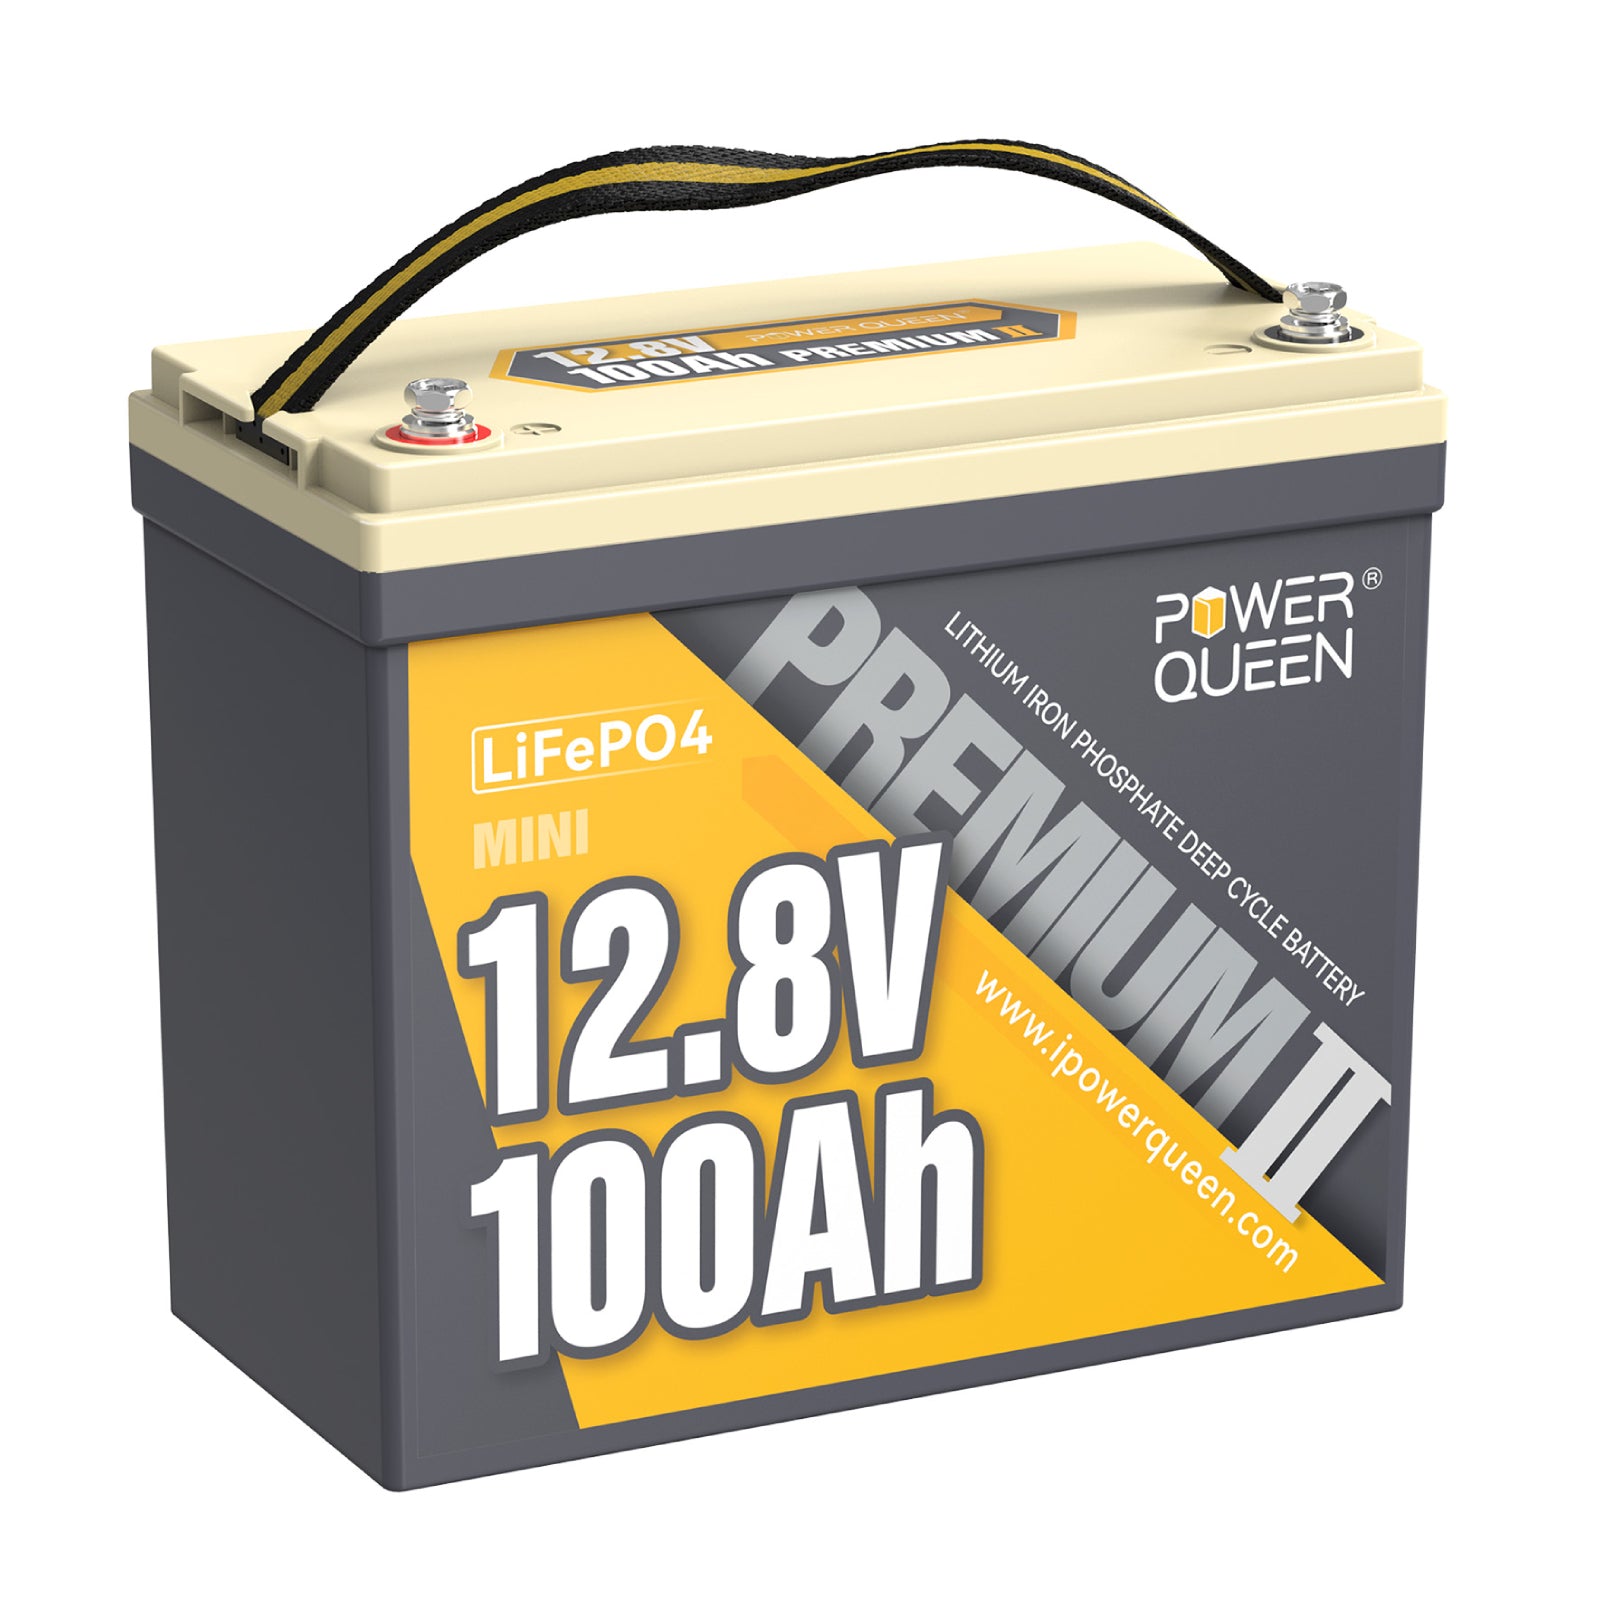 【0% BTW】Power Queen 12,8 V 100 Ah Mini LiFePO4-batterij, ingebouwd 100 A BMS